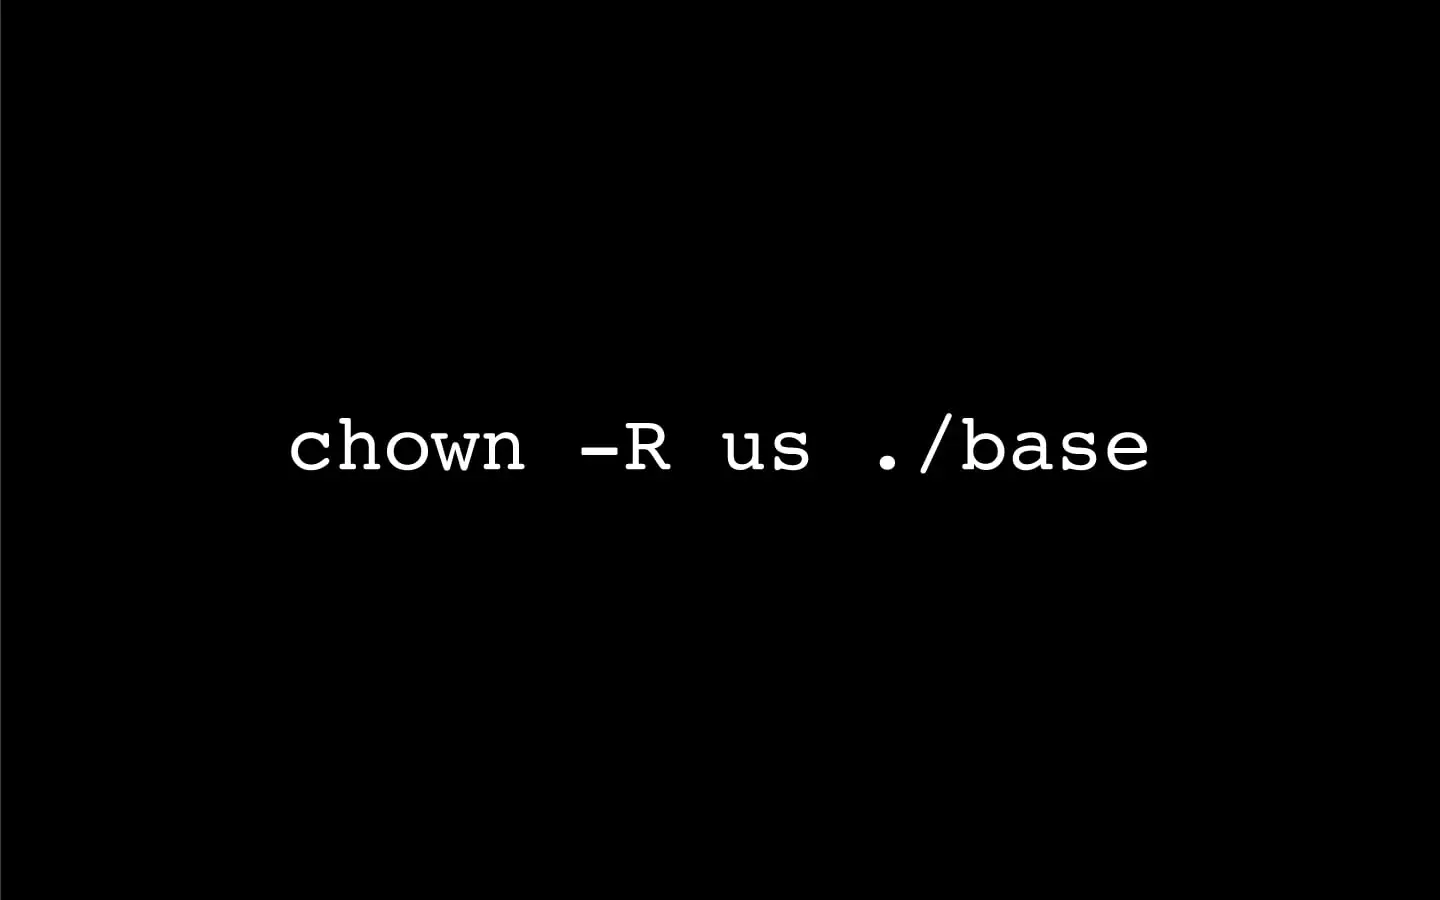 Linux chown 命令修改文件目录所有权